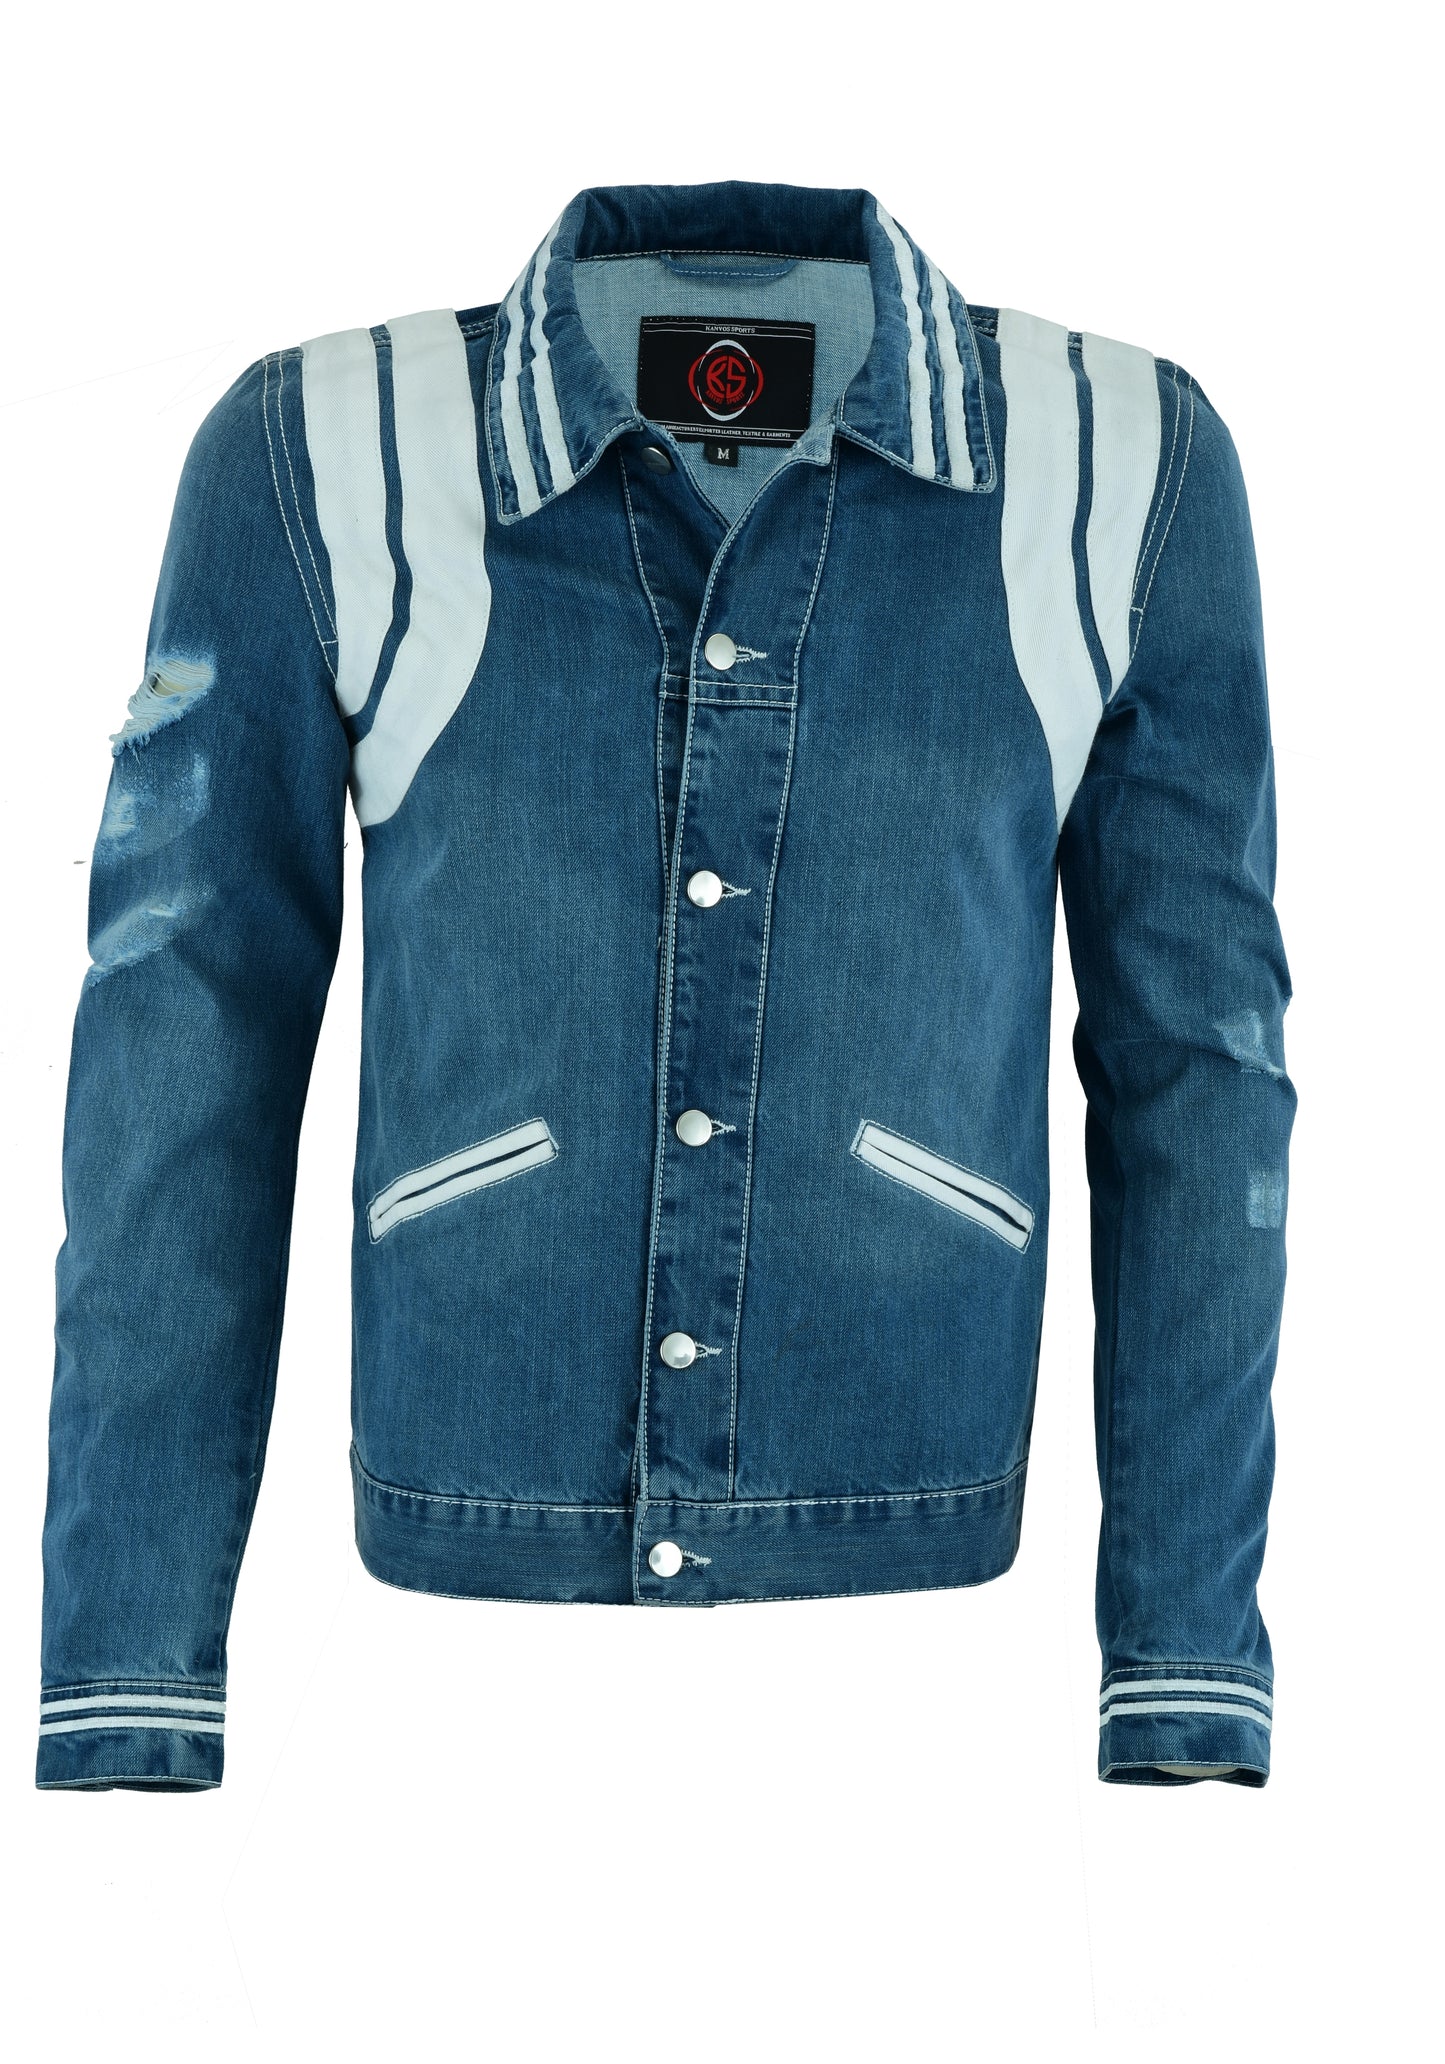 KS105 Blue Denim Jackets Hip-hop Style  Kanvos Sports